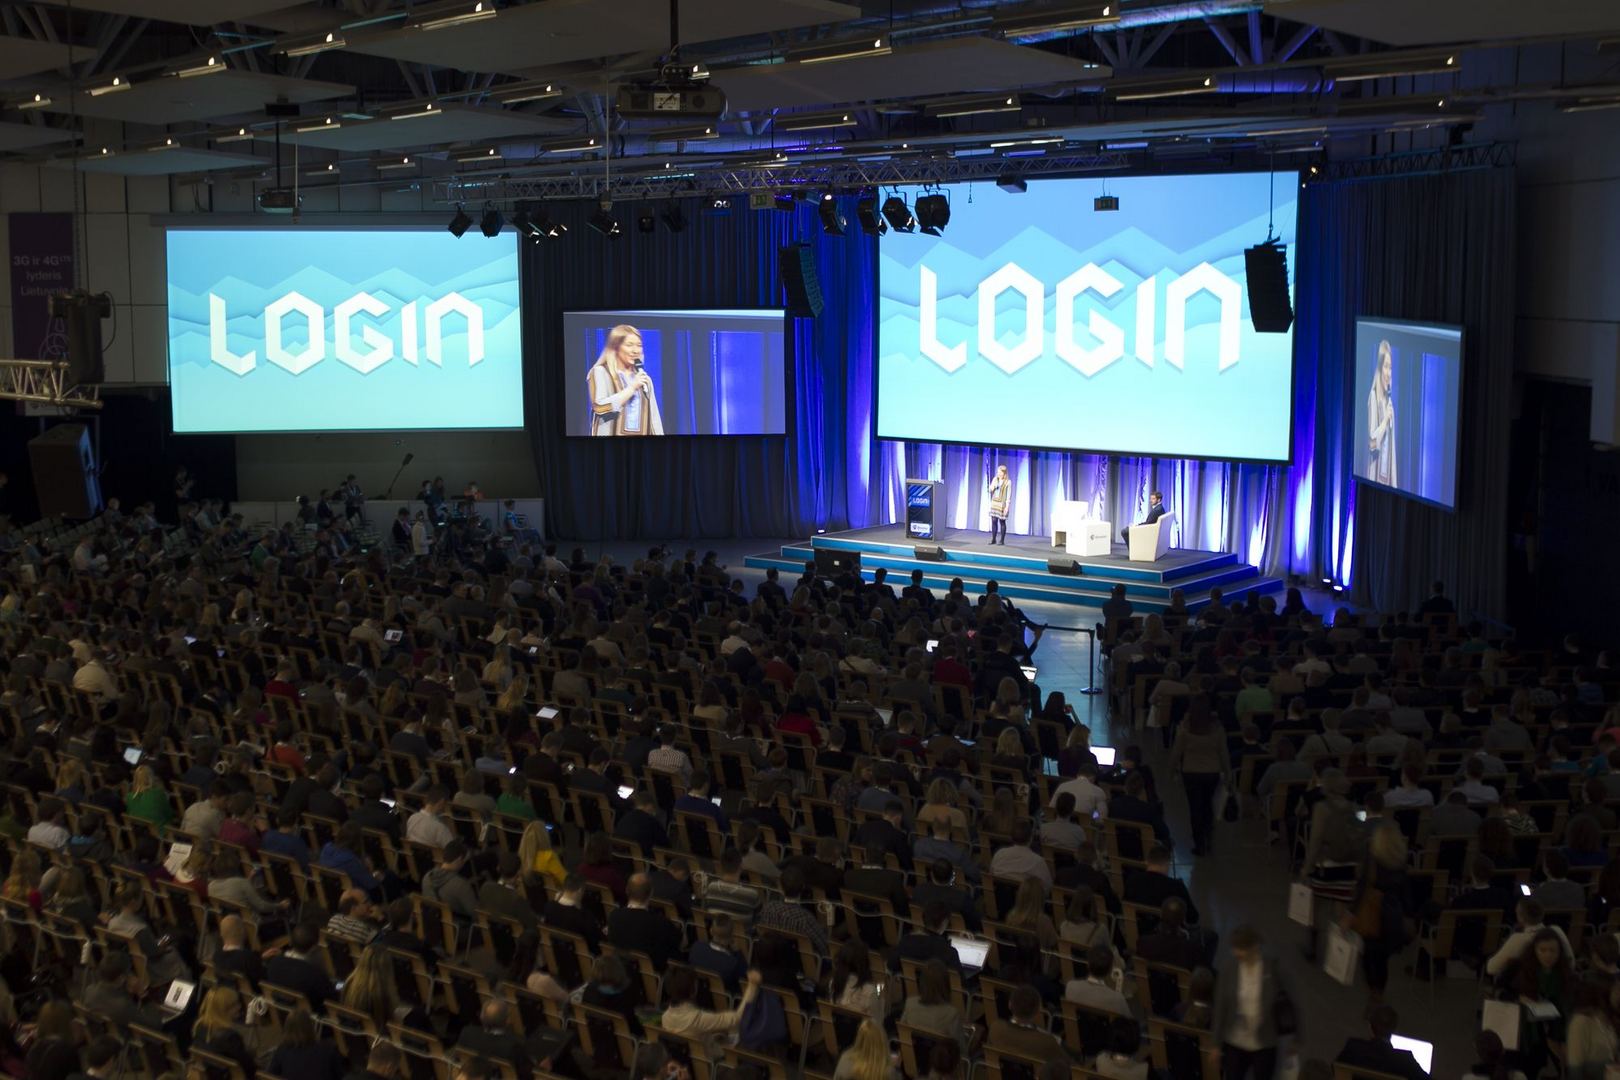 Technologijų ir inovacijų festivaliu virstantis LOGIN 2016: kas keis pasaulį kitąmet?